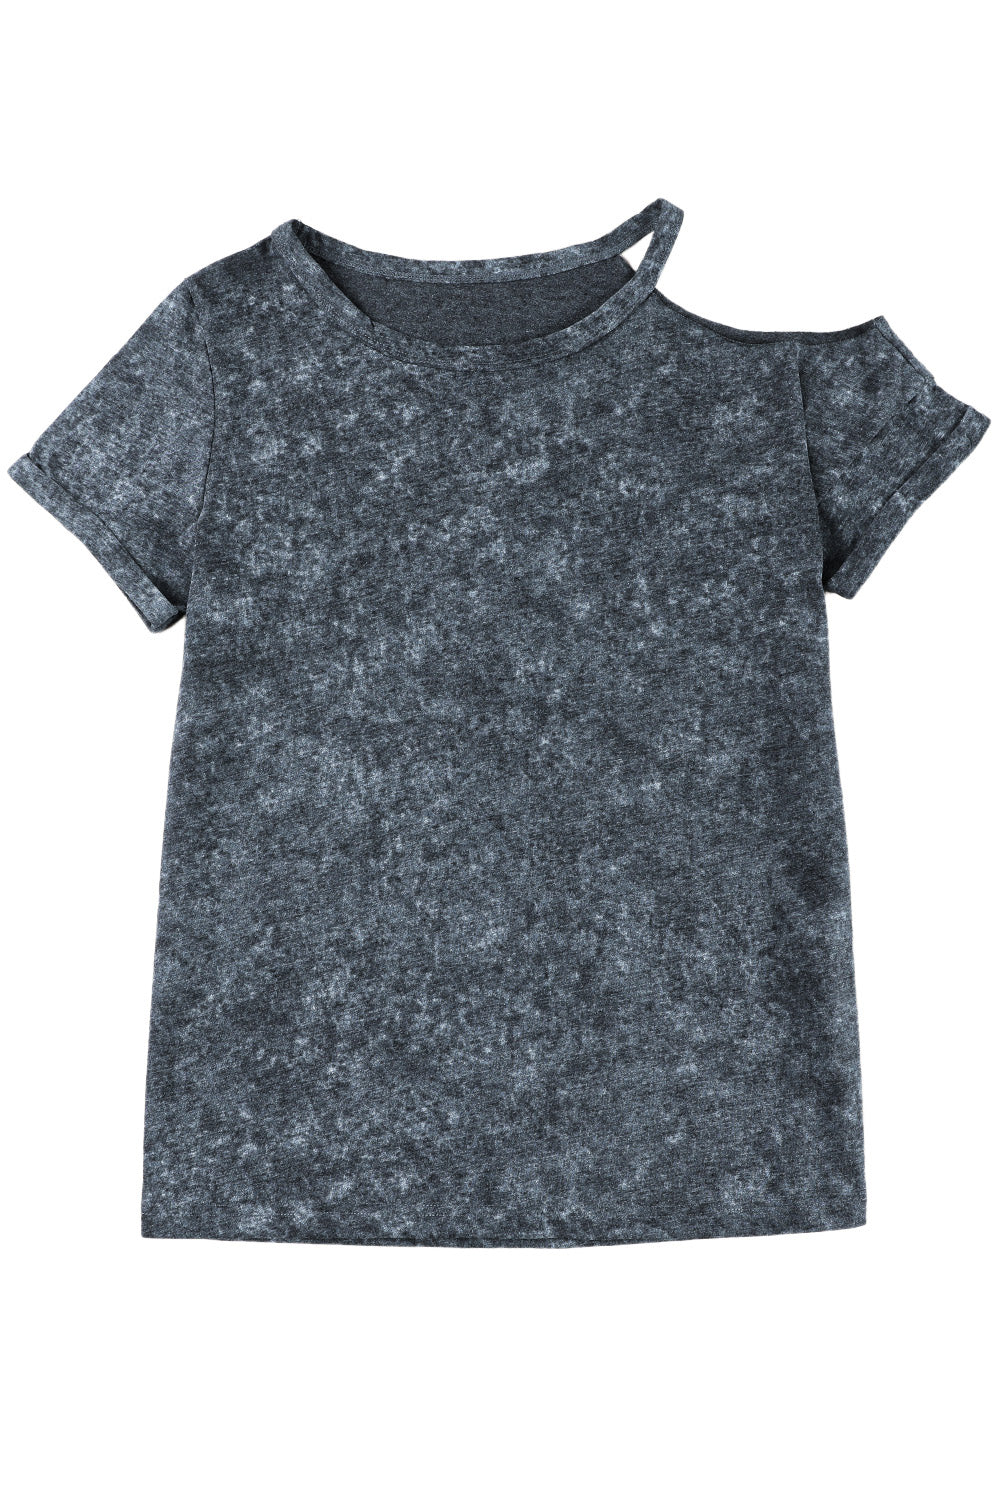 T-shirt asymétrique gris vintage à épaules dénudées